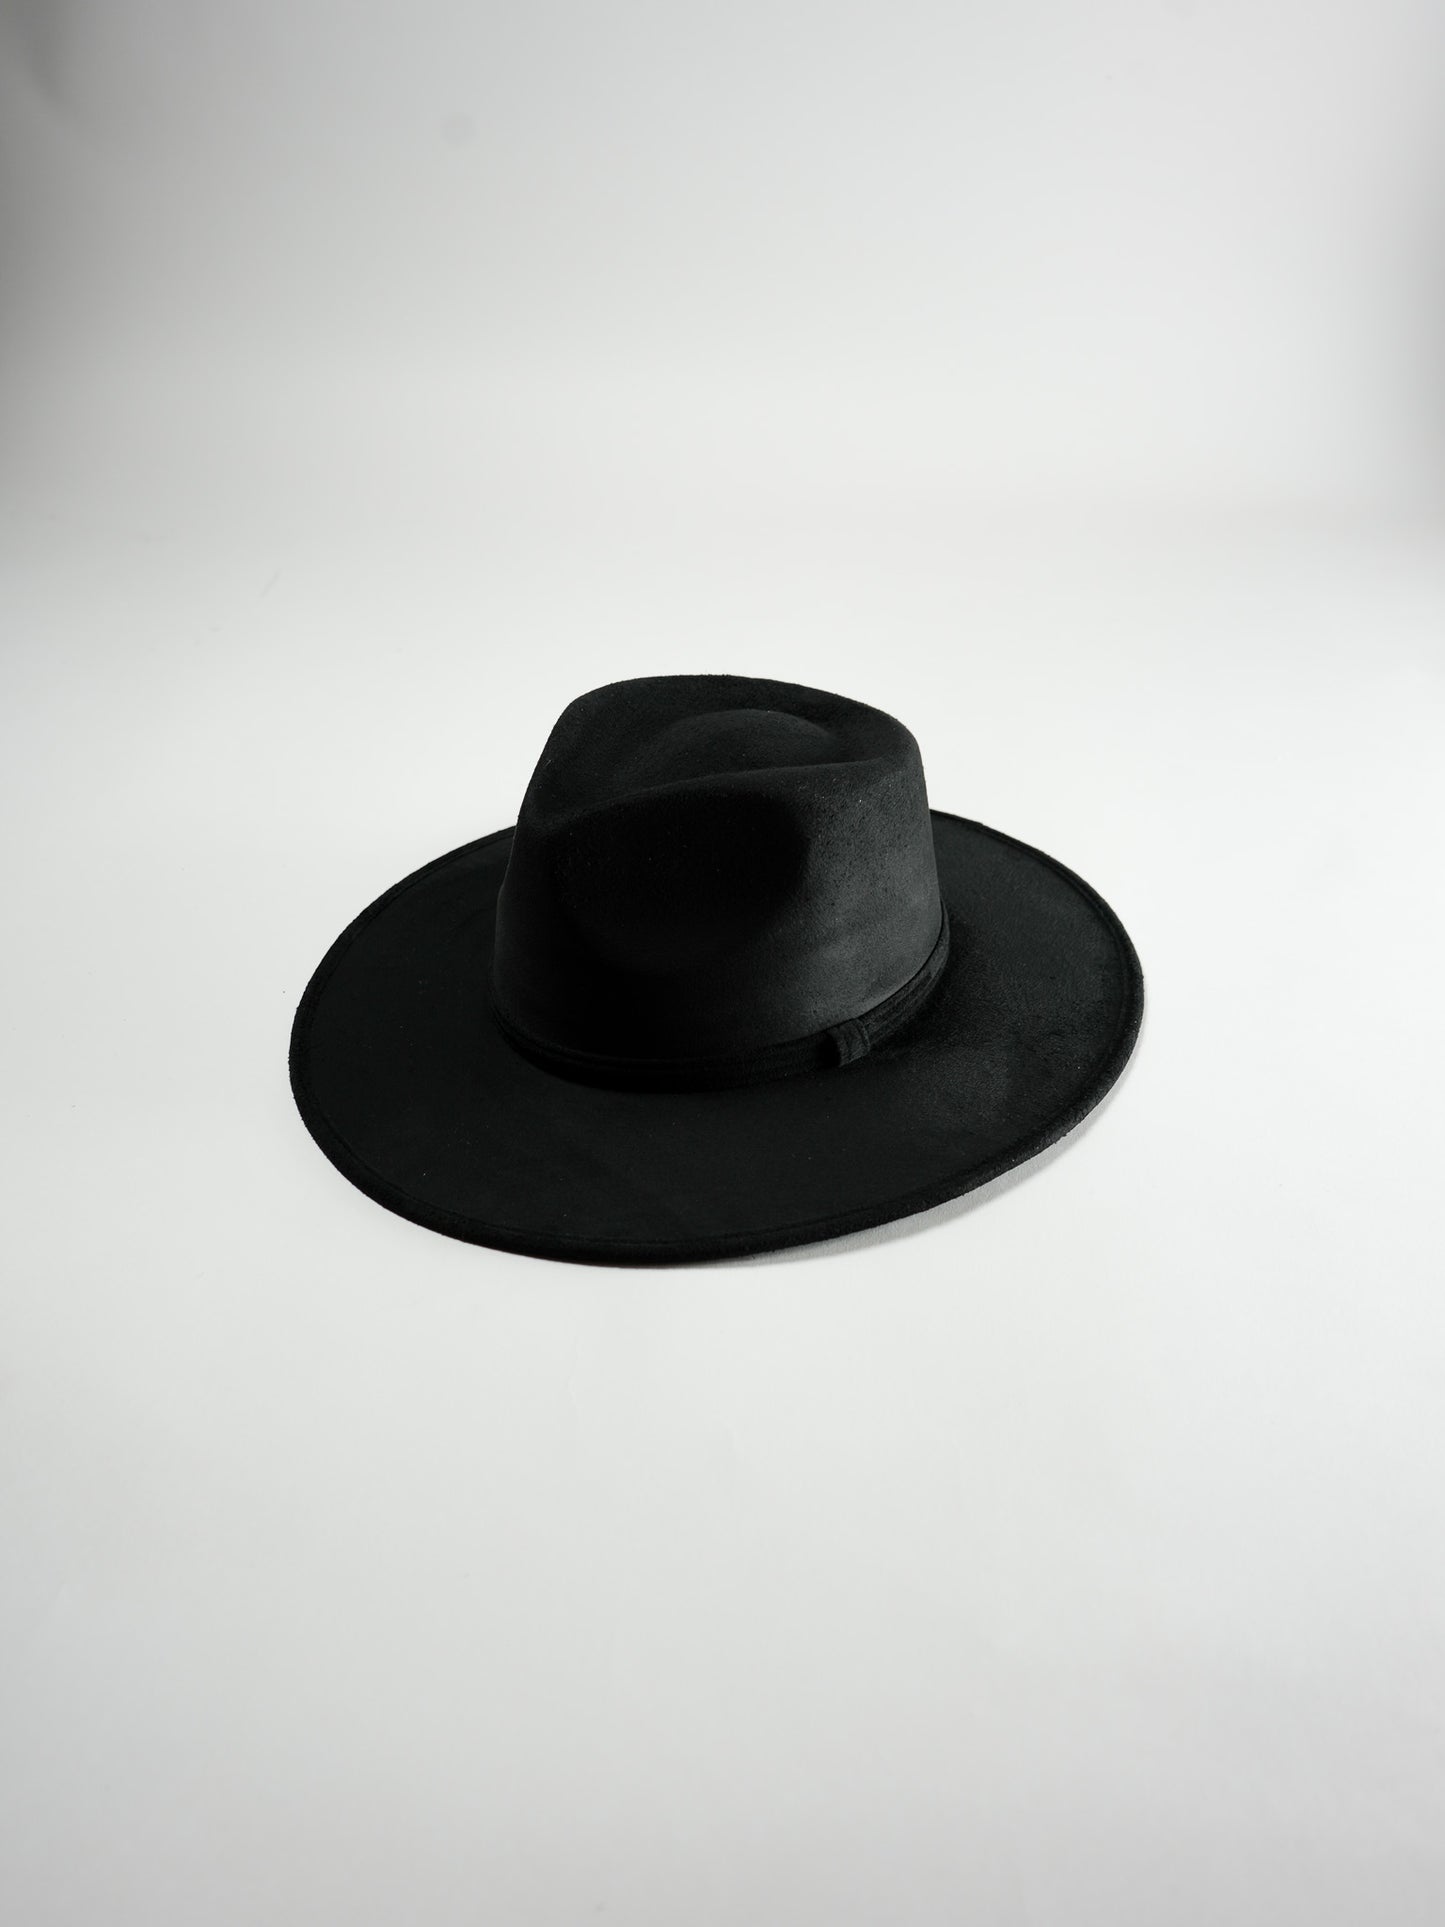 Vegan Suede Rancher Hat- Black